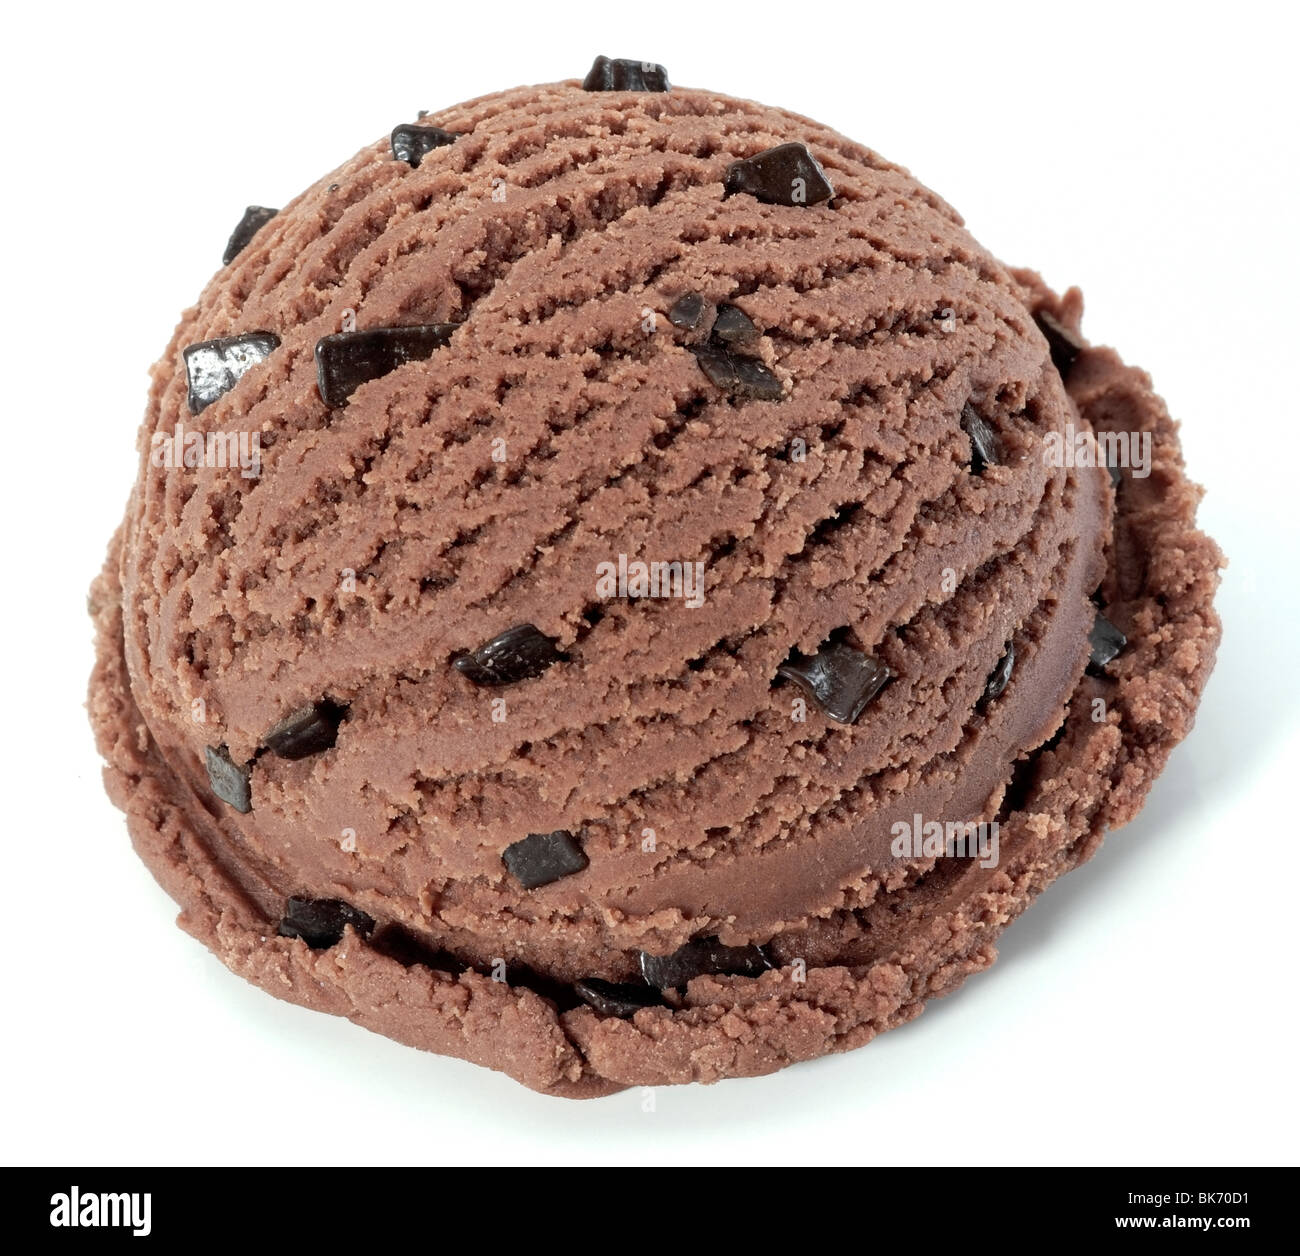 Chocolate ice cream ball Stock Photo